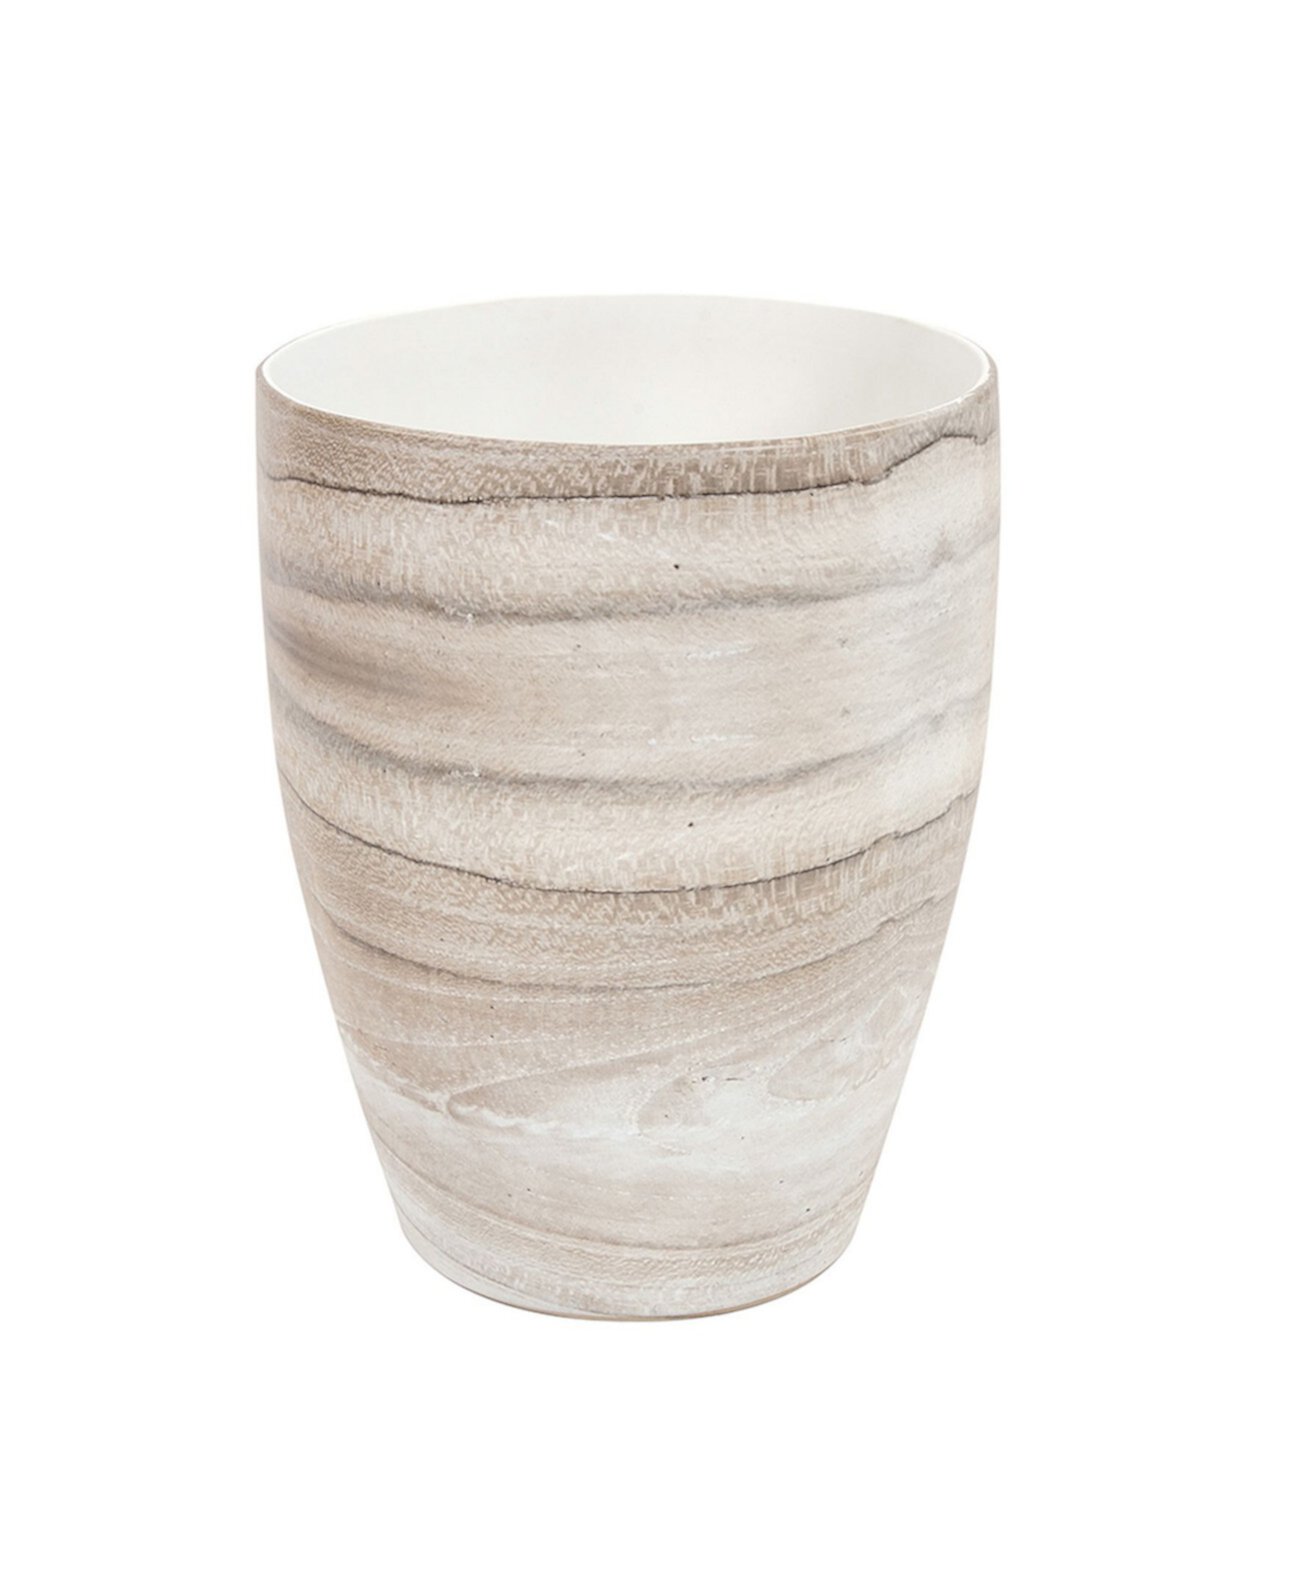 Коническая керамическая ваза Desert Sands, малая Howard Elliott